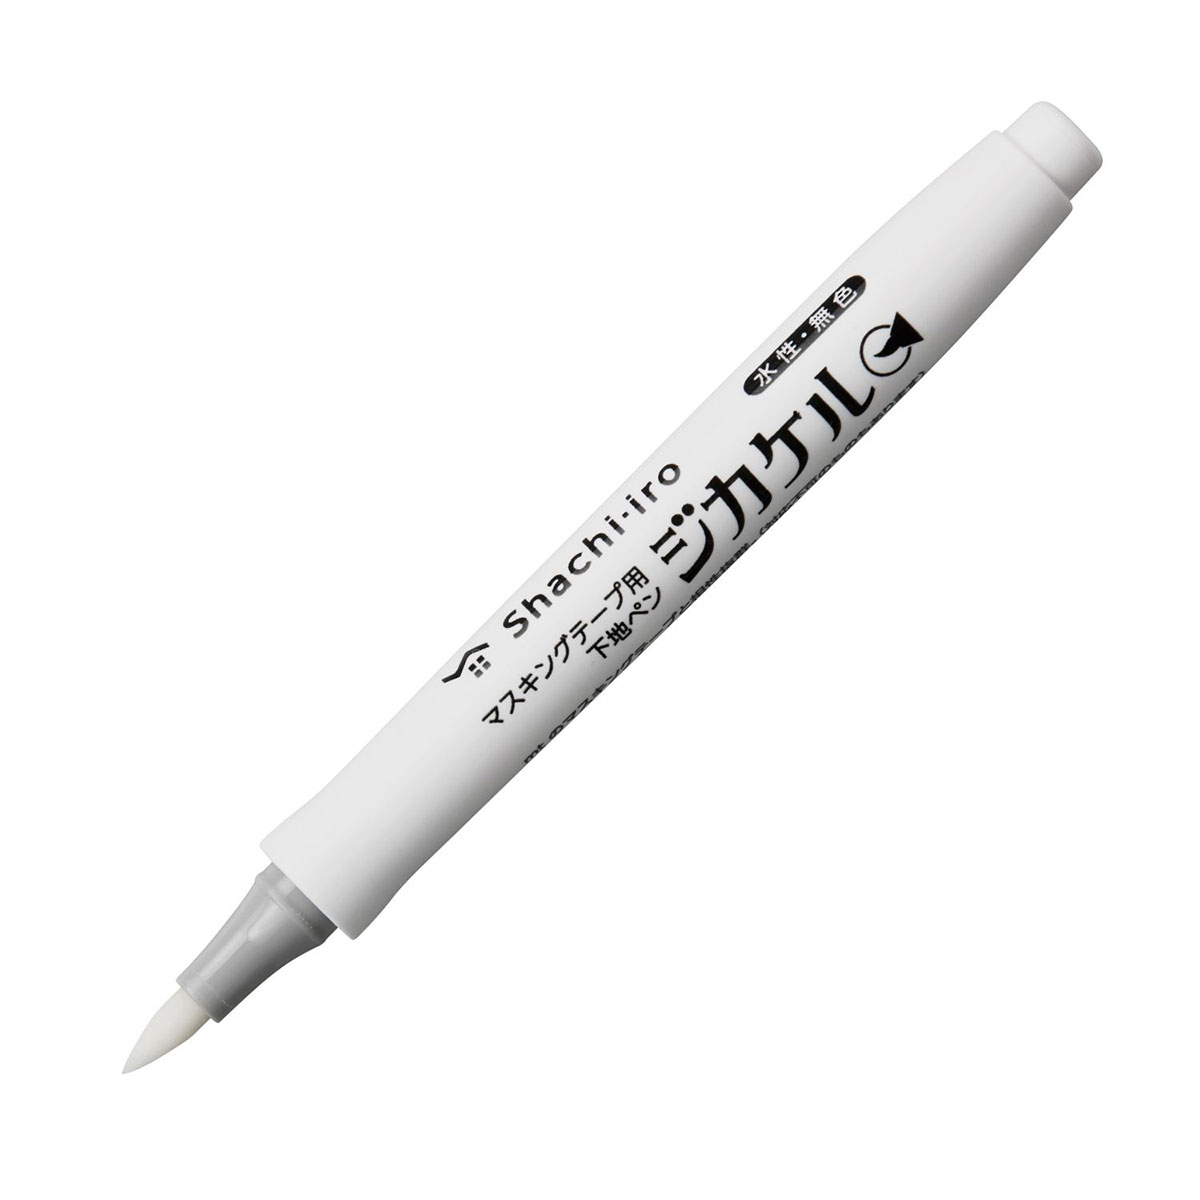 ブラッシュタイプのペン芯で塗布しやすい